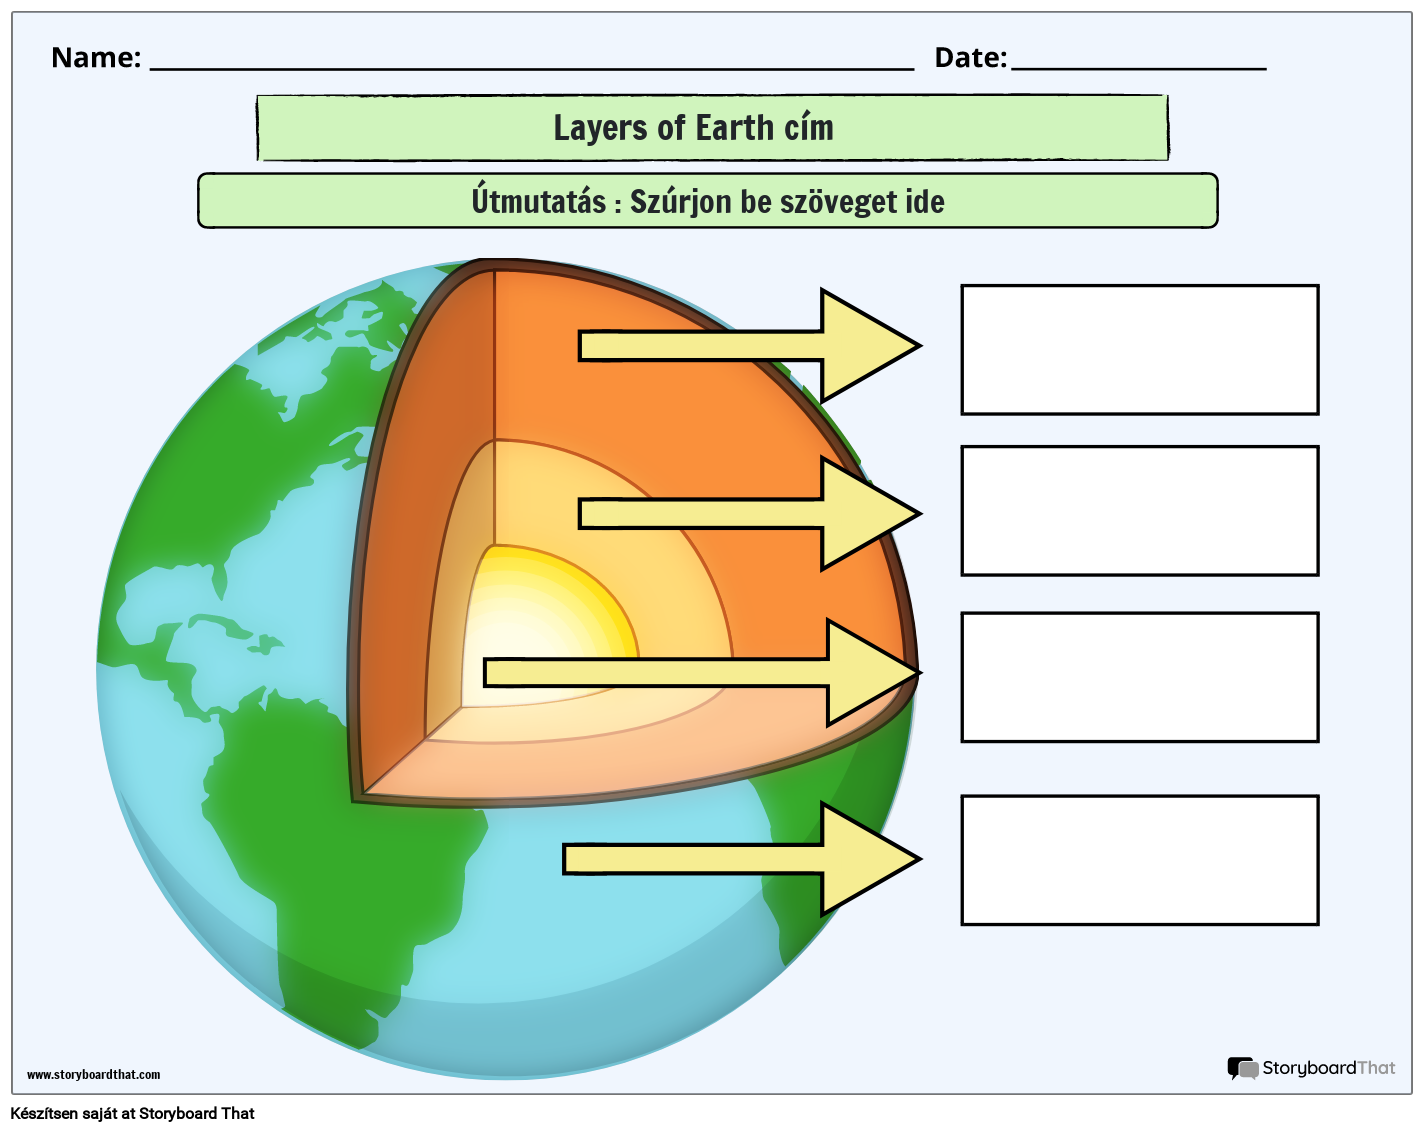 A Föld munkalap földtudományi rétegei